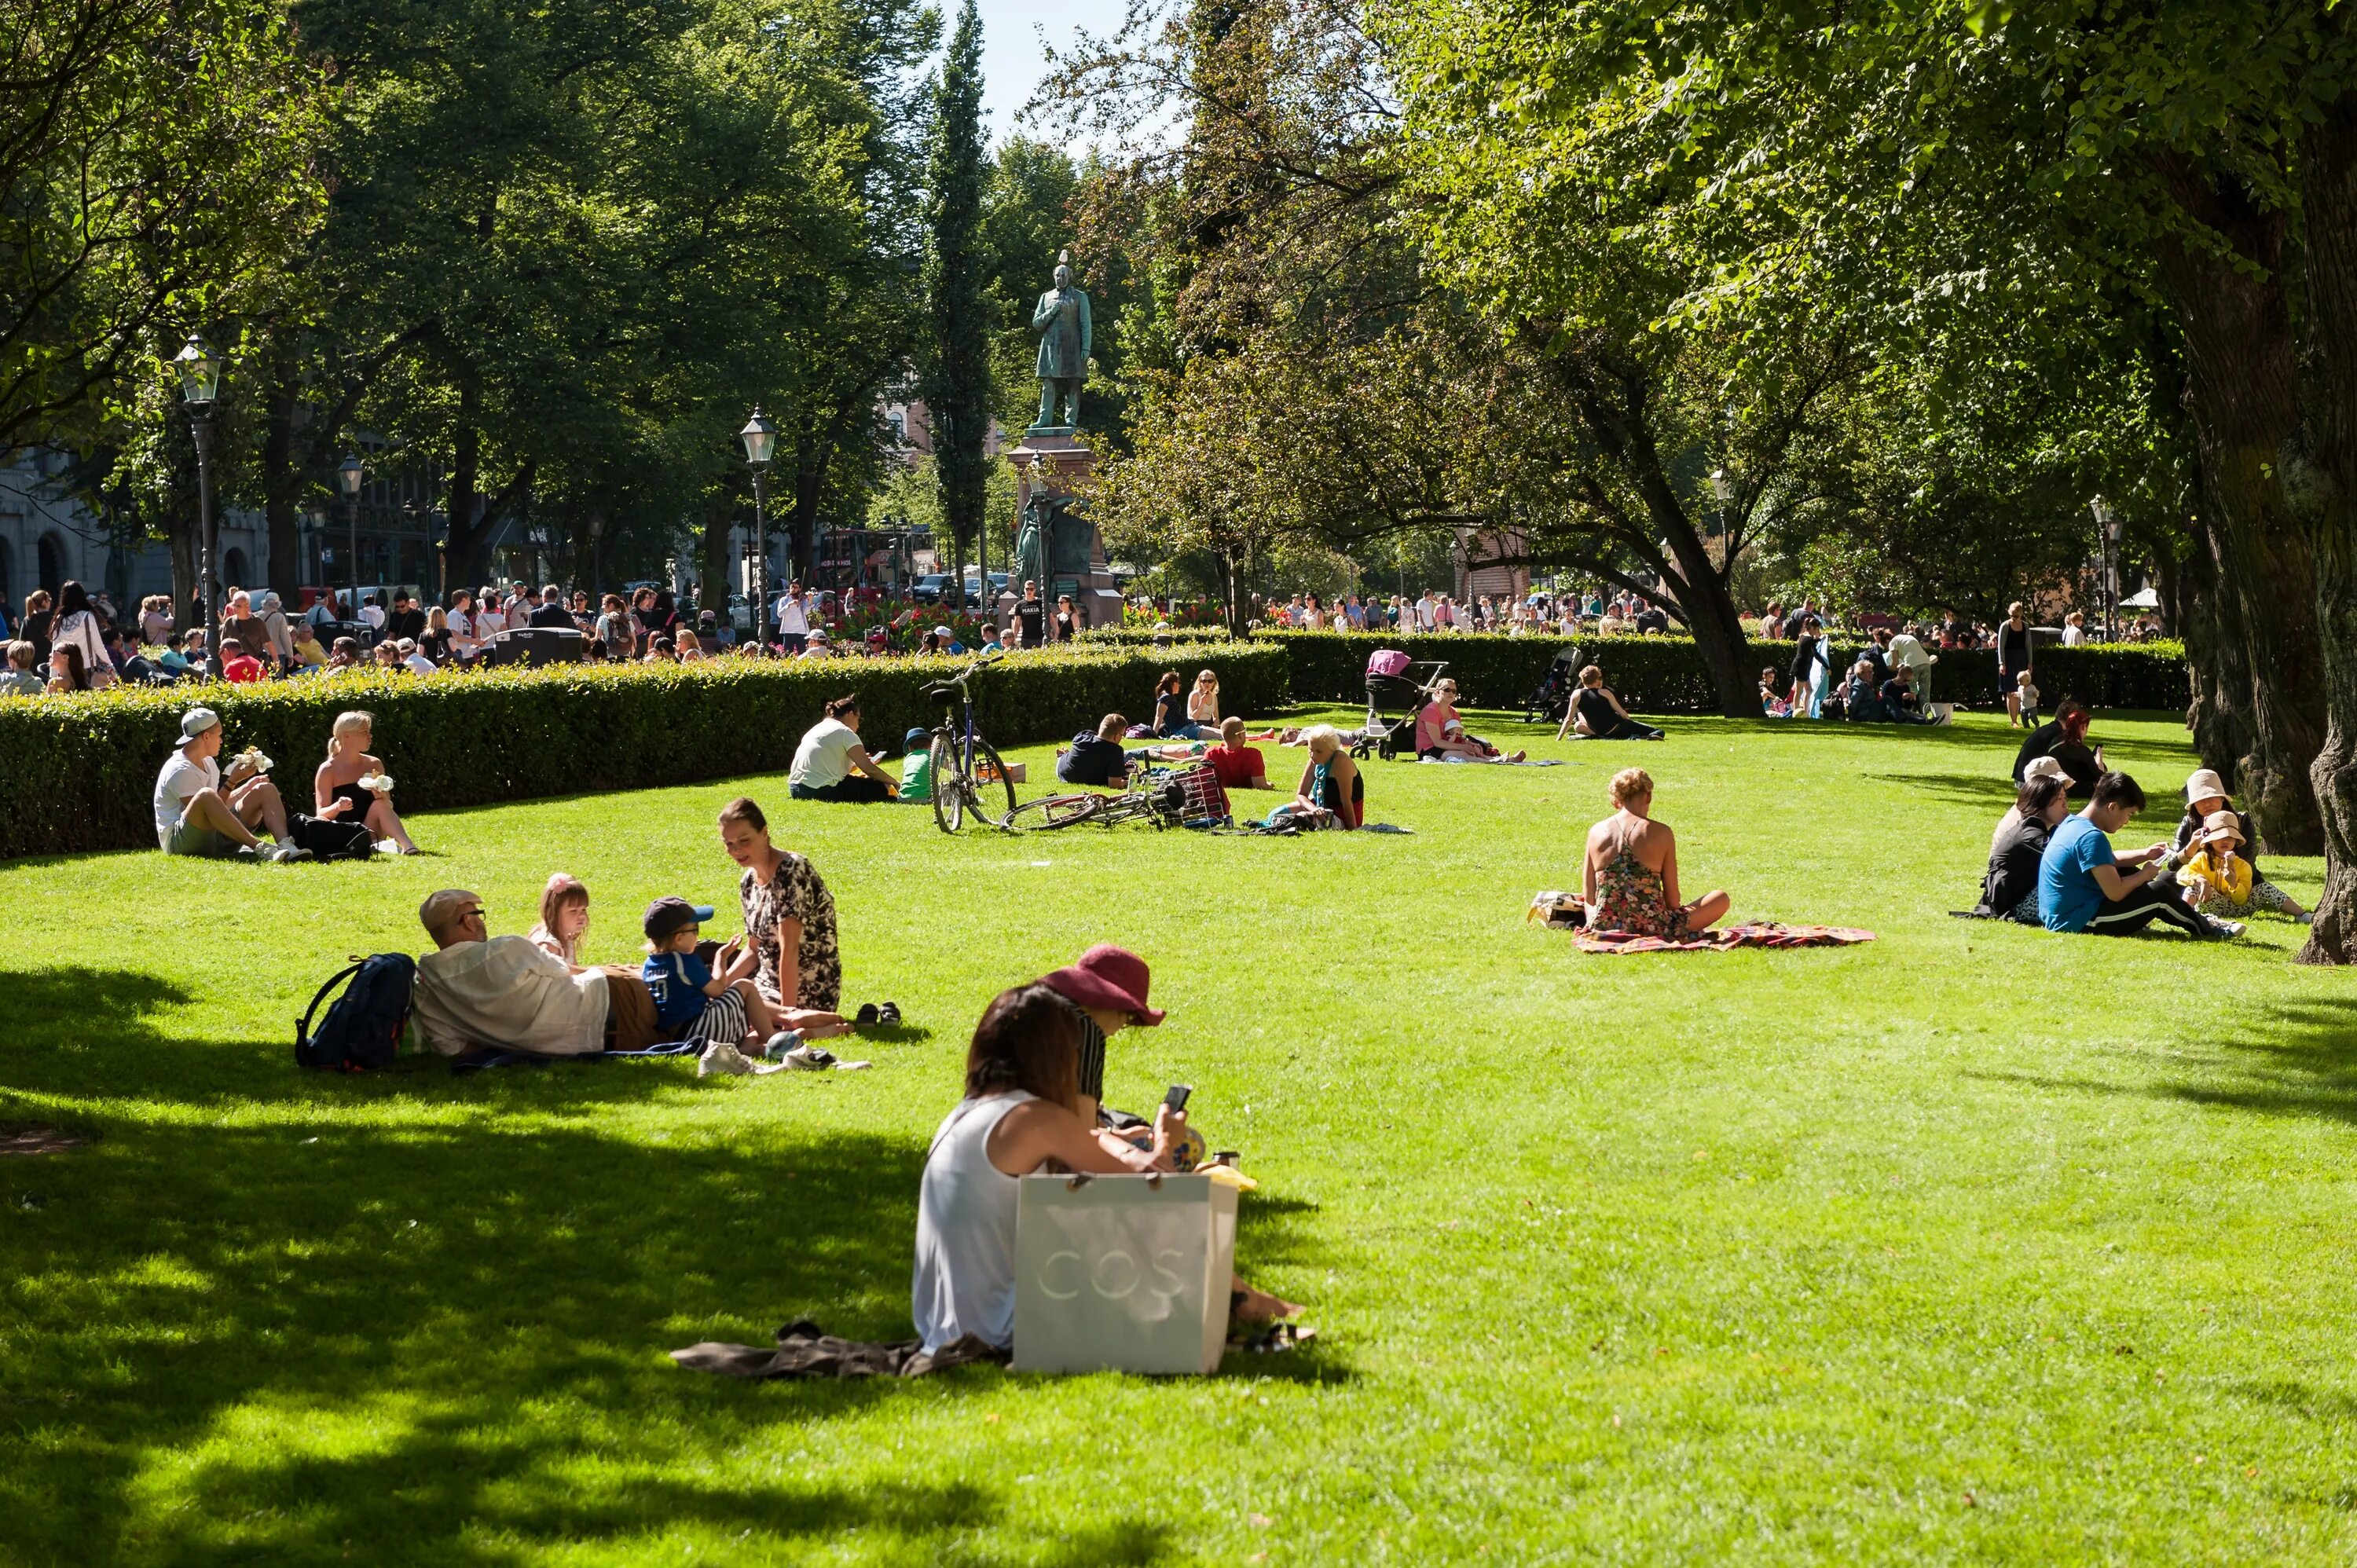 Park in. Общественный парк Хельсинки. Пикник на газоне. Люди в парке. Пикники в парках.